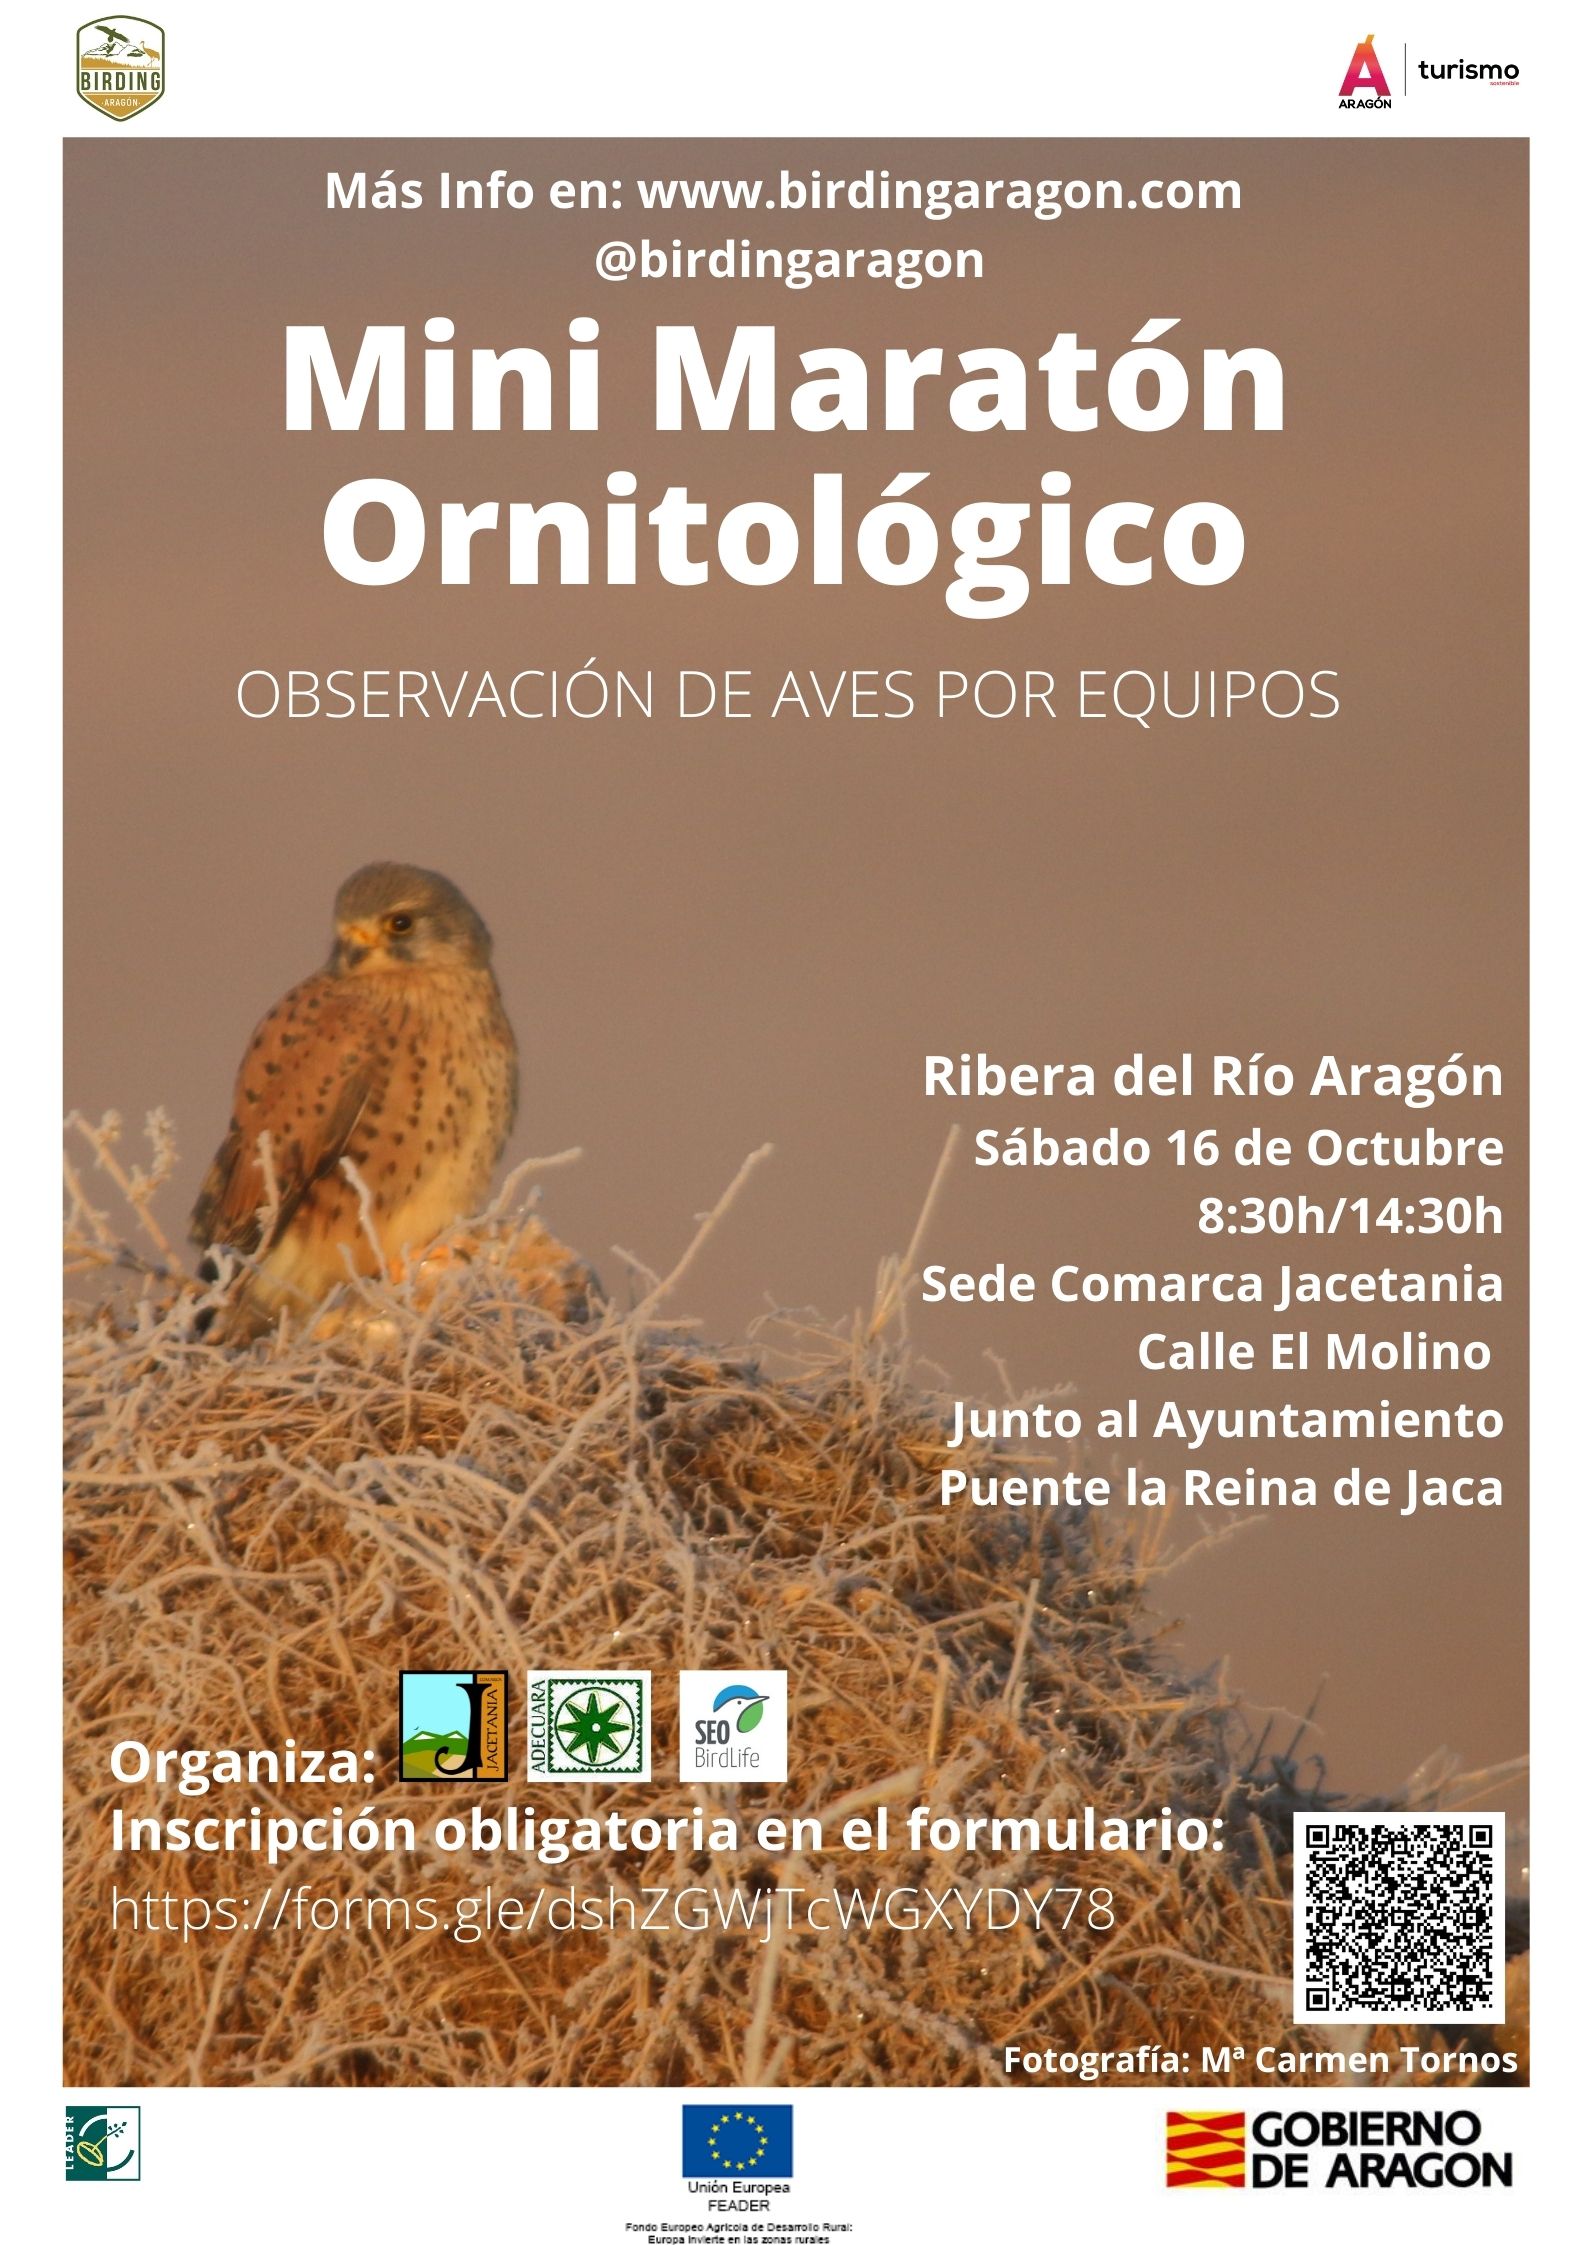 Mini-Maratn ornitolgico en la Comarca de La Jacetania